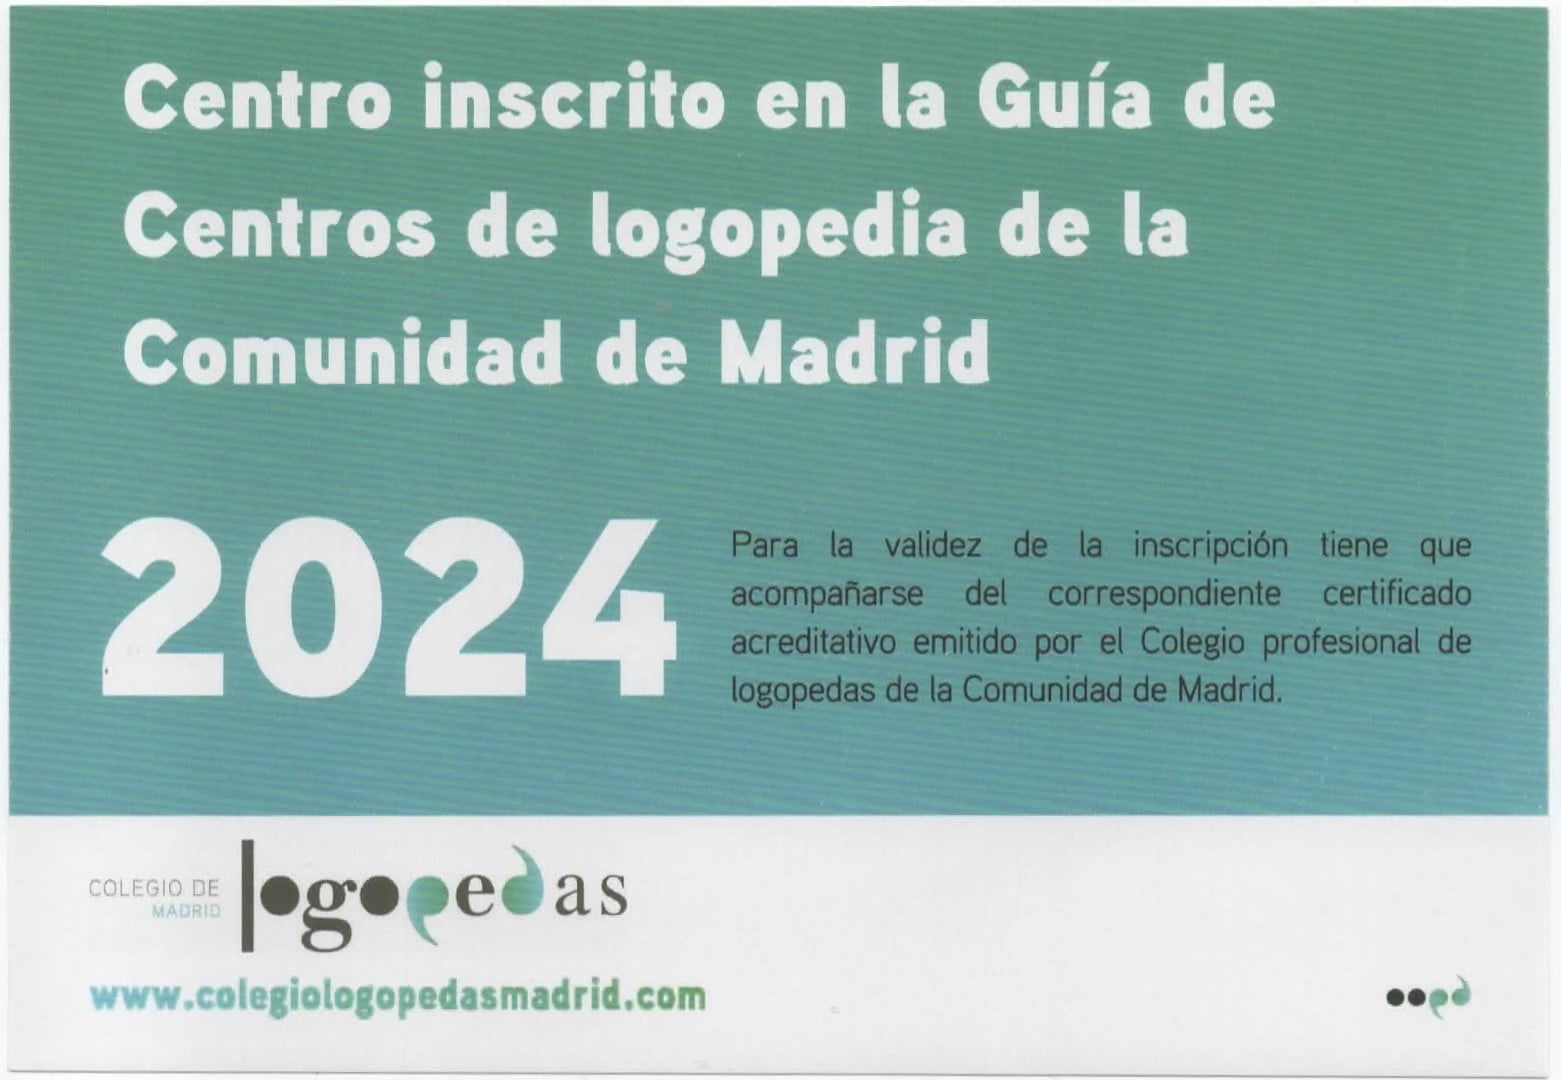 Centro inscrito en la Guía de centros de logopedia de la Comunidad de Madrid 2024